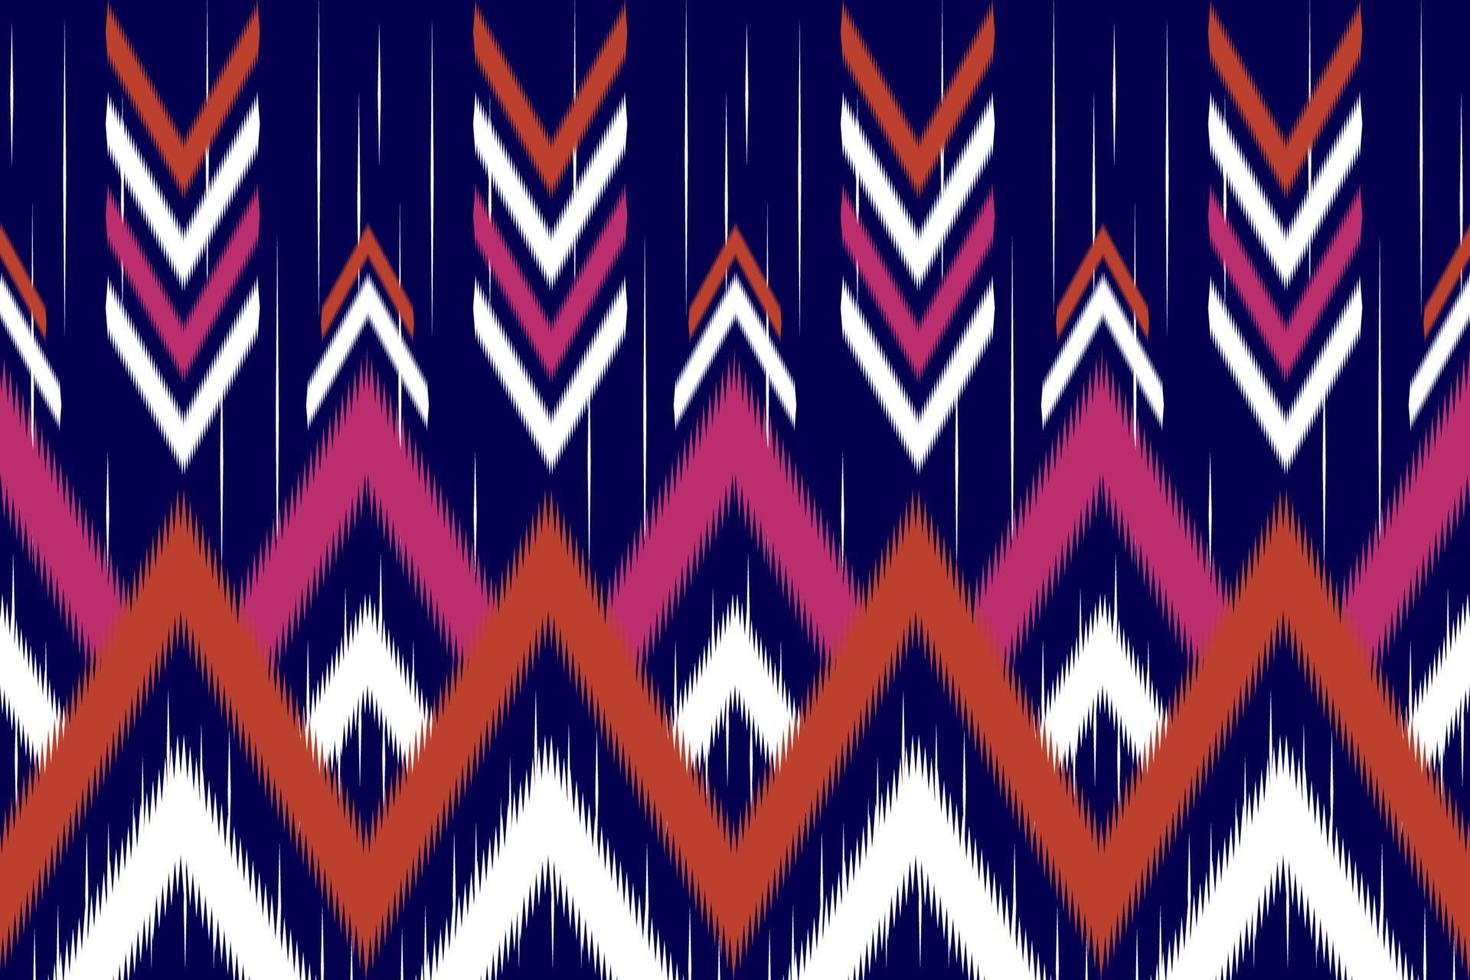 ikat chevron etniskt mönster. traditionell tribal stil. design för bakgrund, illustration, textur, tyg, batik, kläder, inslagning, tapeter, matta, broderi vektor